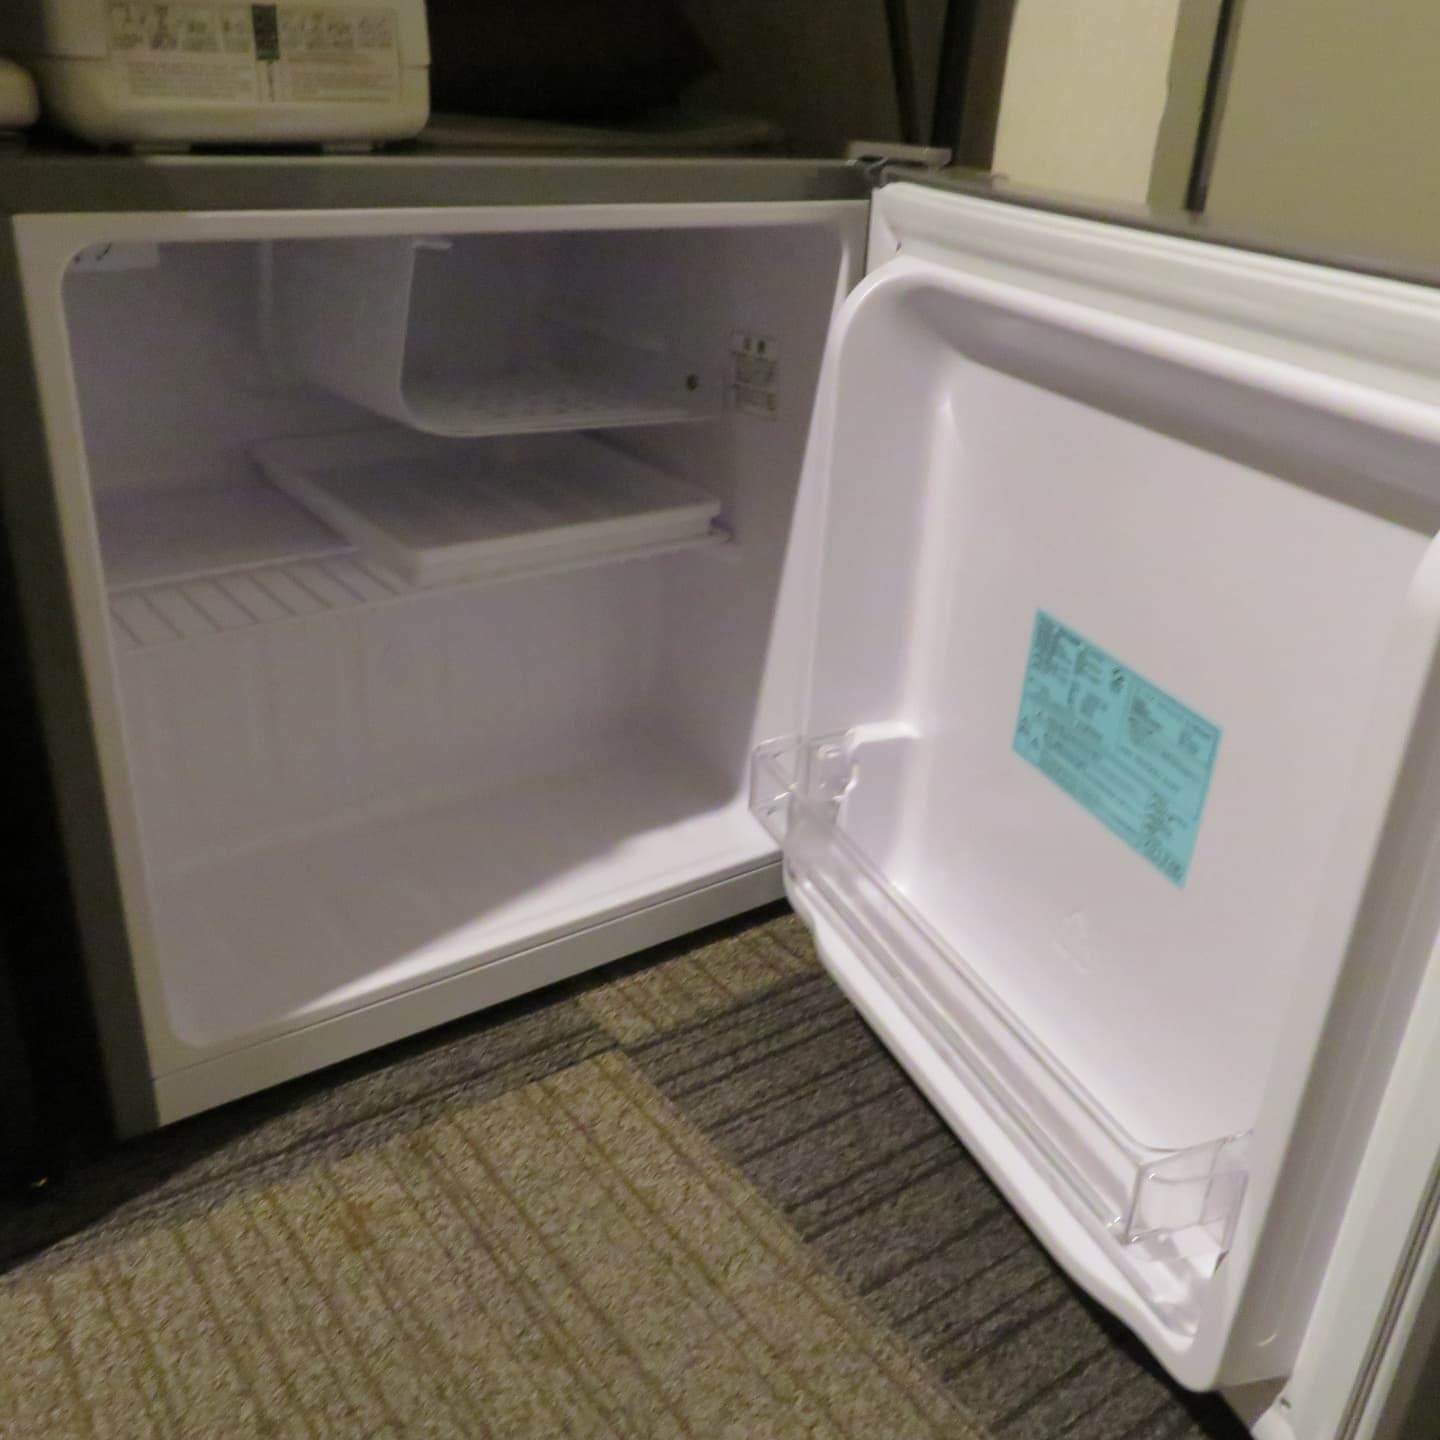 【全室共通】1ドア直冷式冷蔵庫。ミニ冷凍庫有。